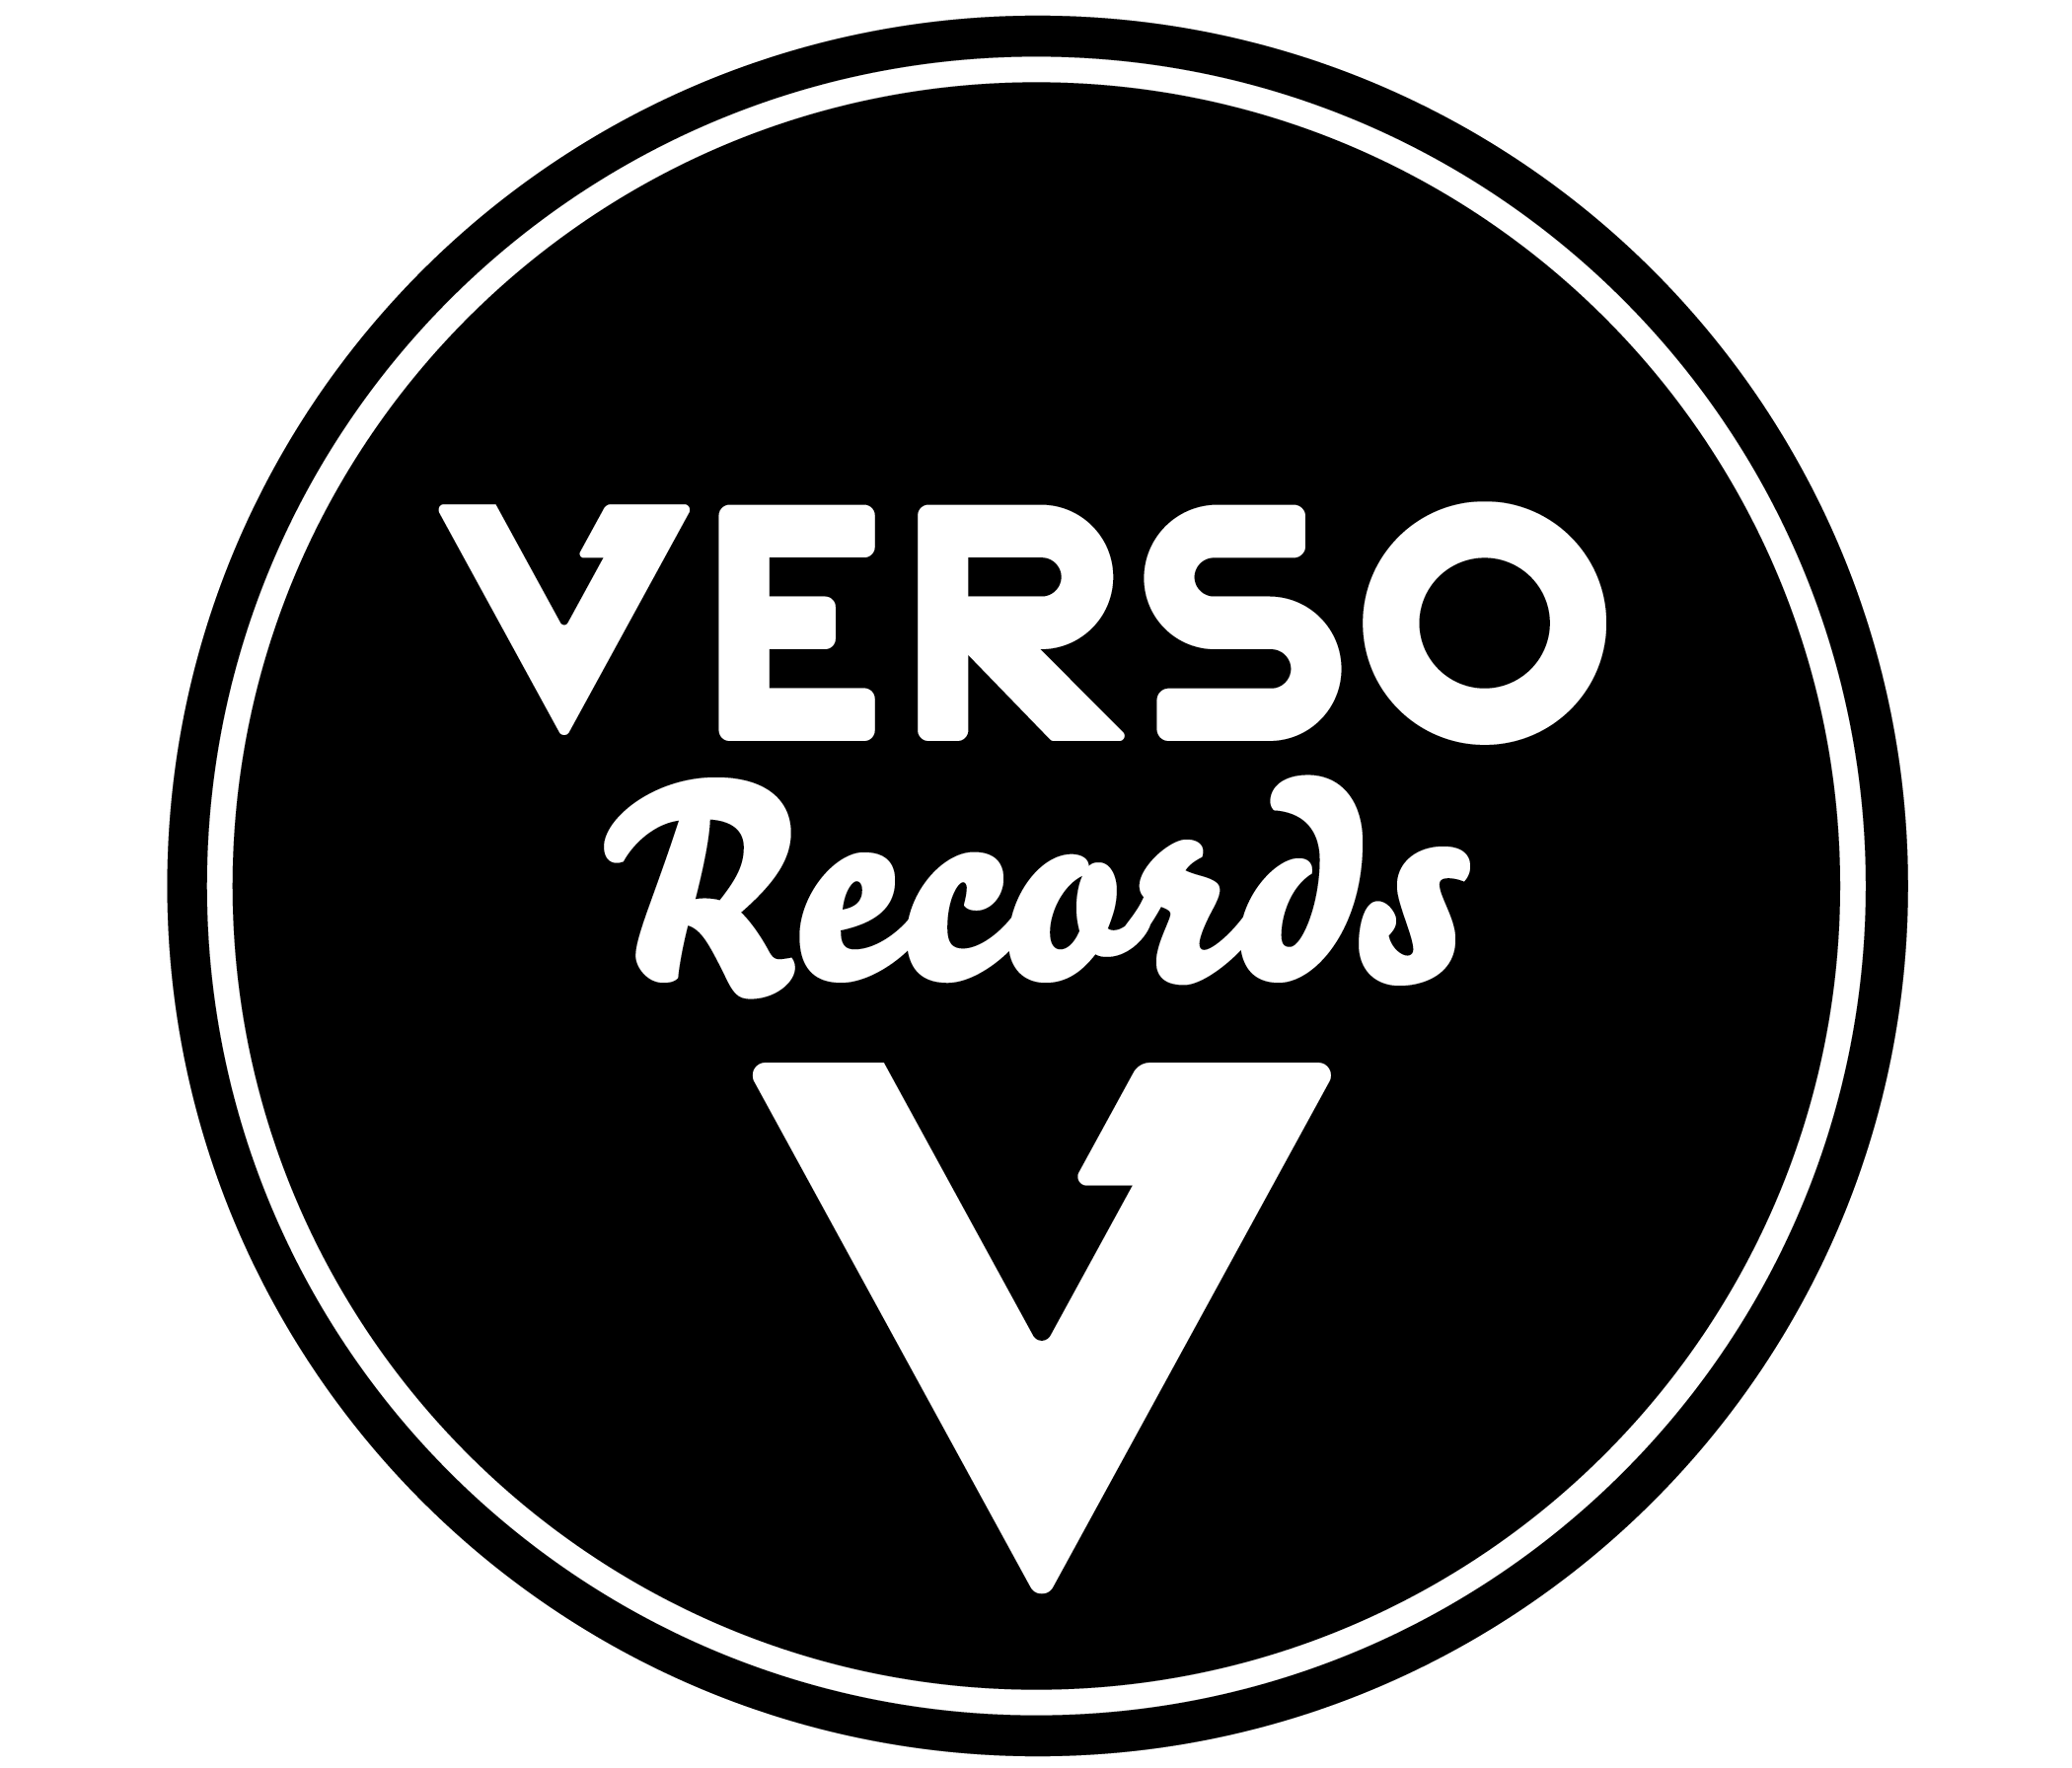 Verso Records